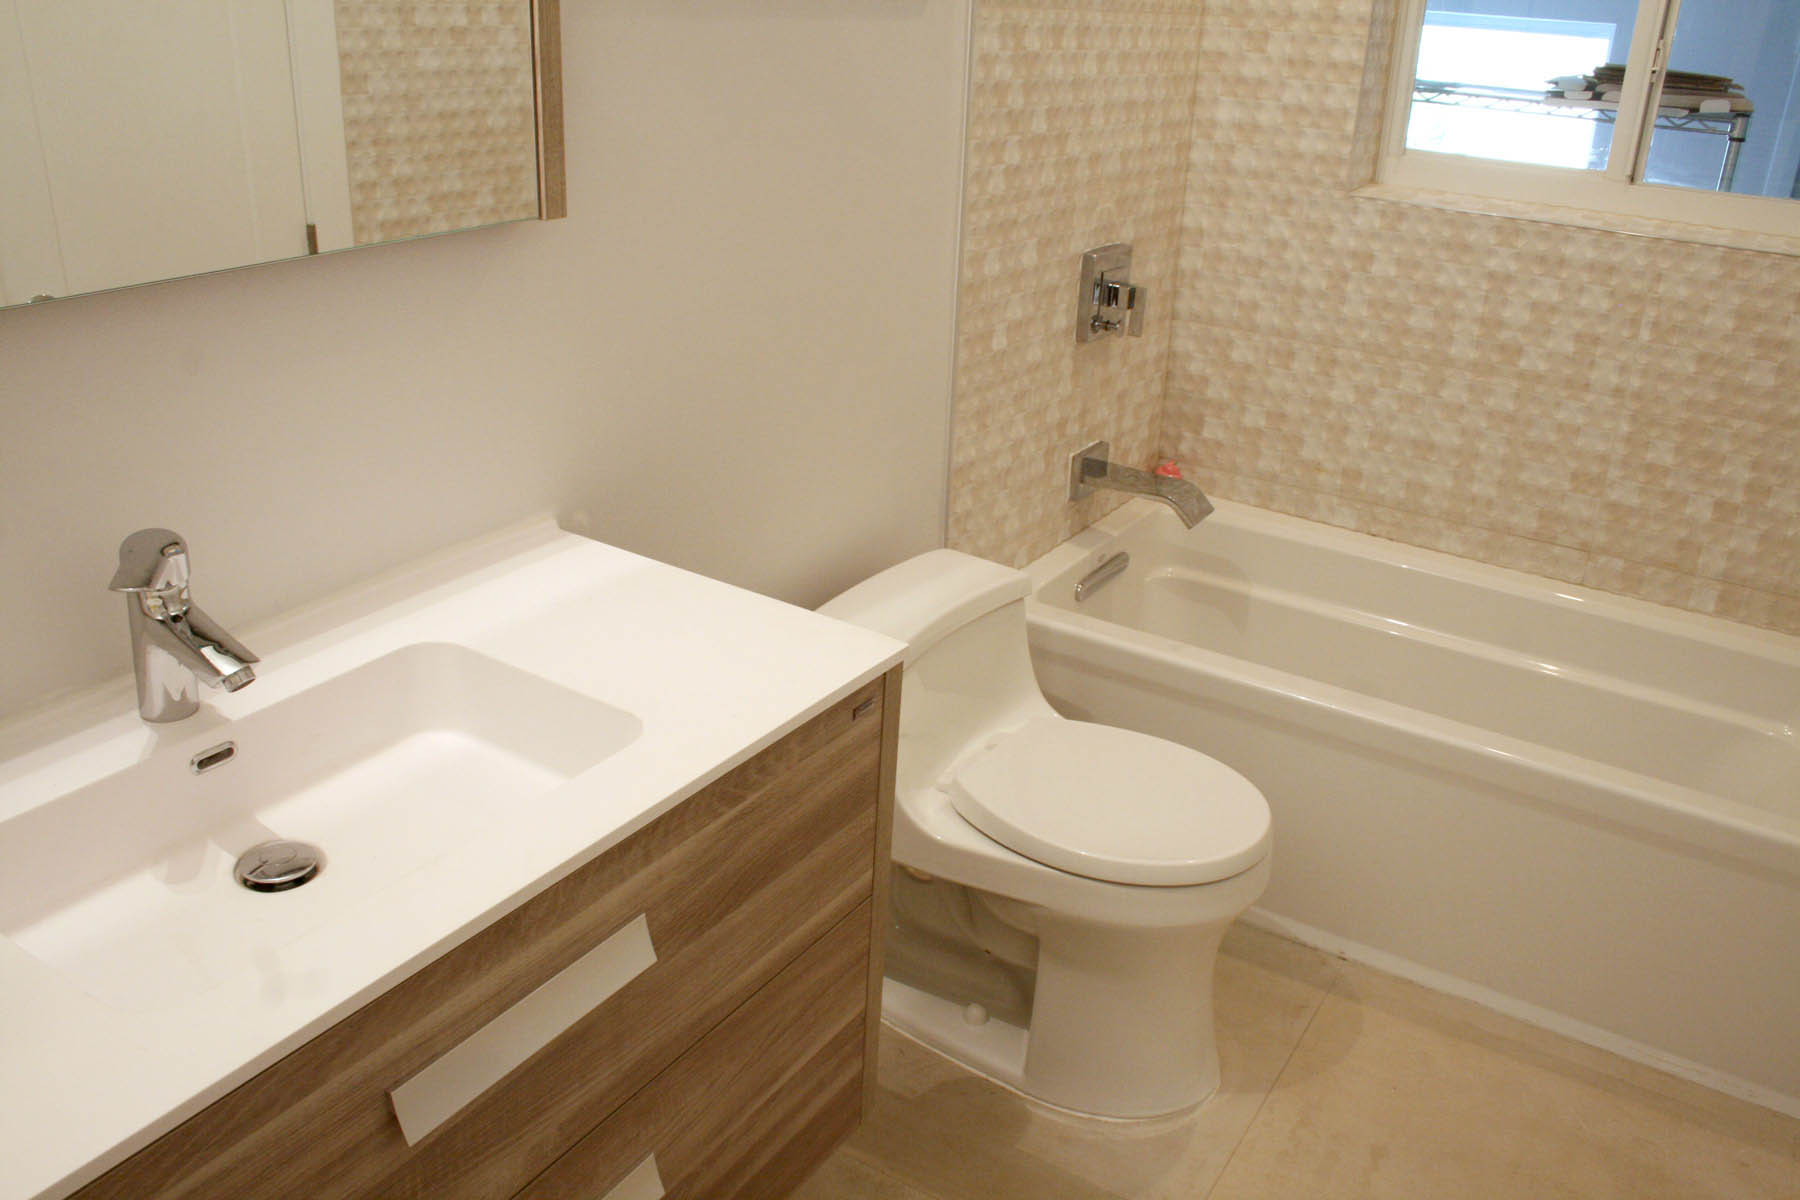 New Hallway Bathroom with Porcelain Tiles & Wall-Mounted Vanity